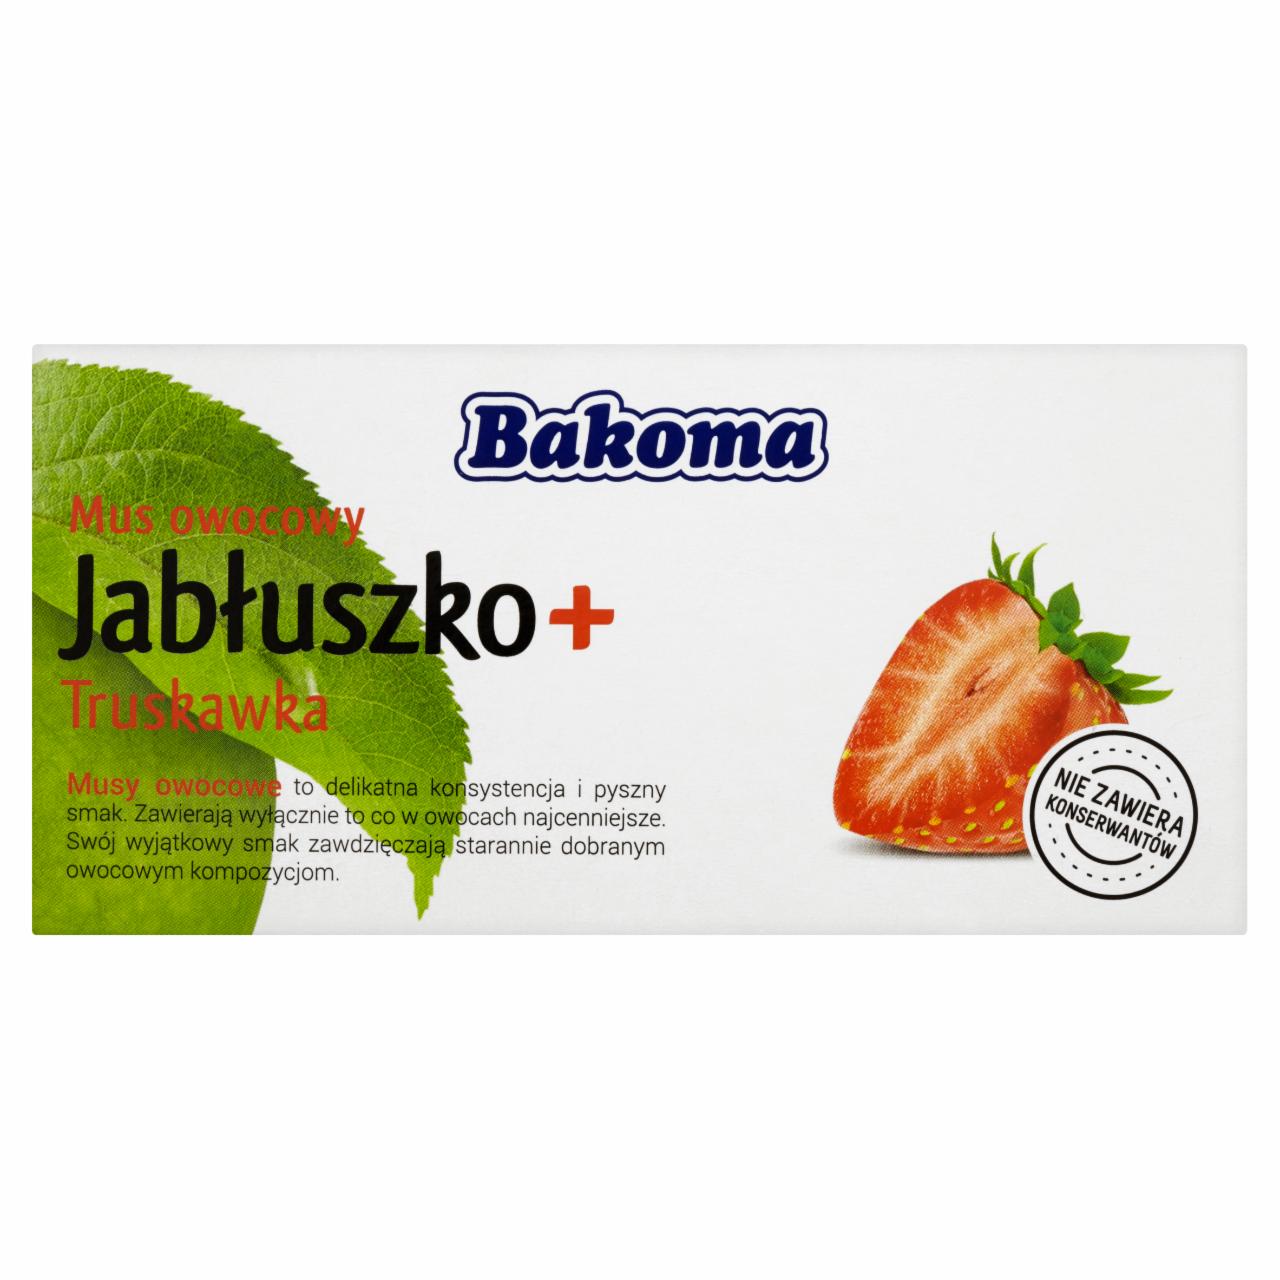 Zdjęcia - Bakoma Mus owocowy Jabłuszko + Truskawka 200 g (2 sztuki)